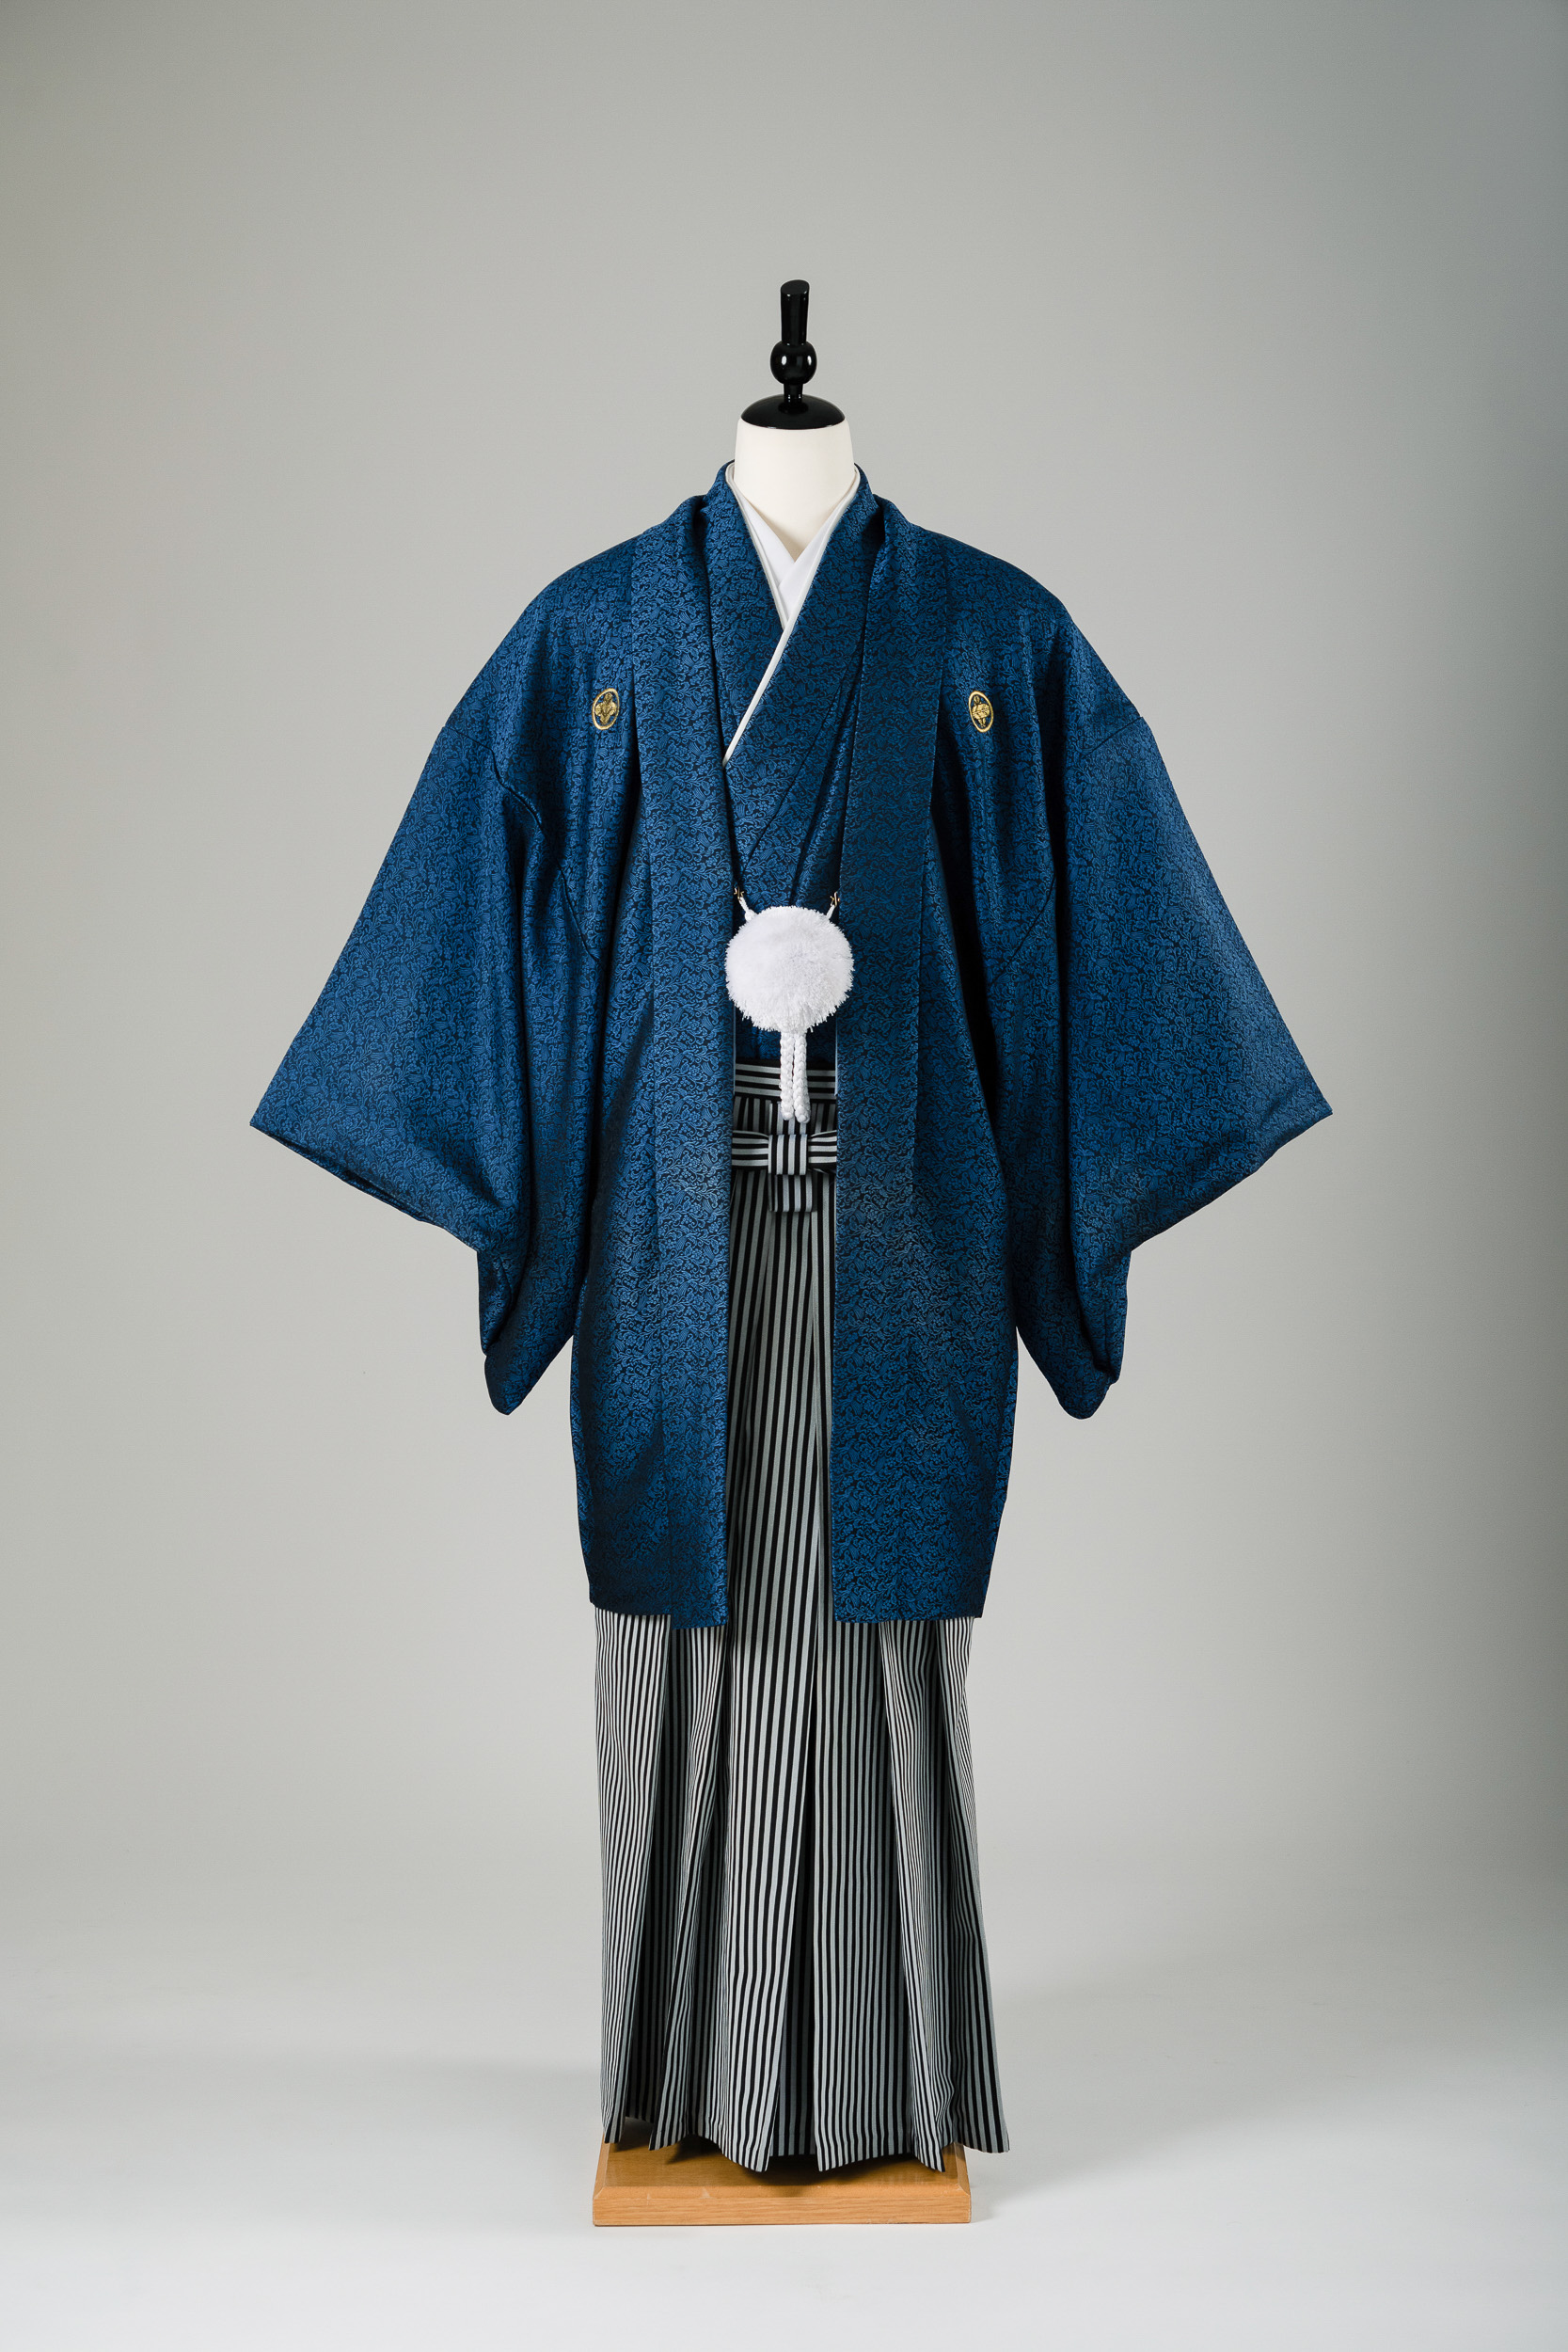 男性衣装の青色の紋付袴レンタル】M/L/LLサイズ・男の第一礼装